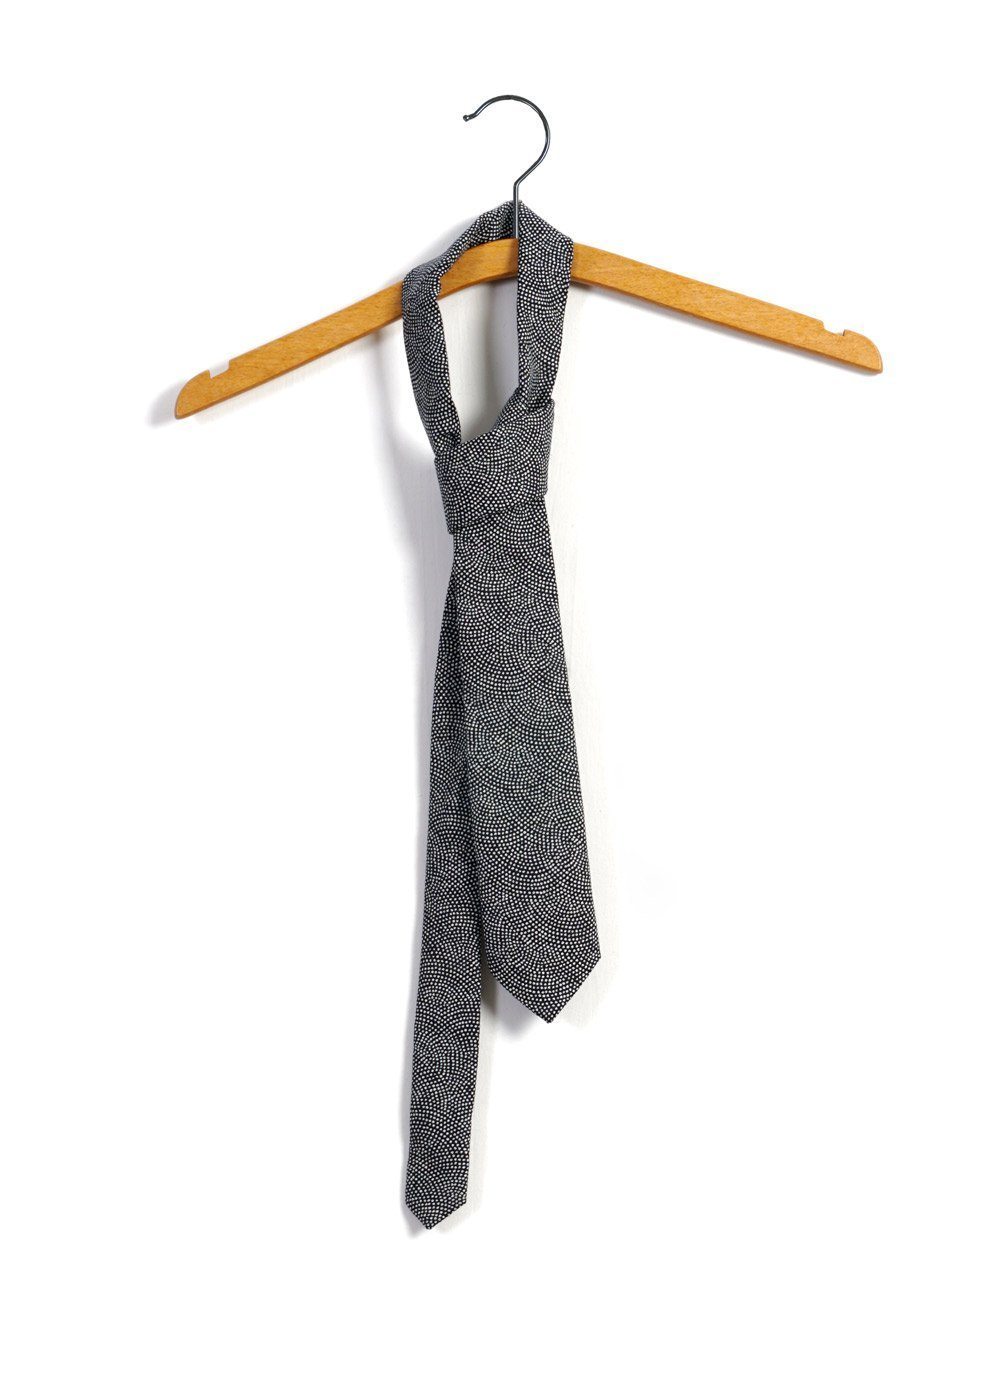 TIE | Printed Pattern Tie| Wave -HANSEN Garments- HANSEN Garments